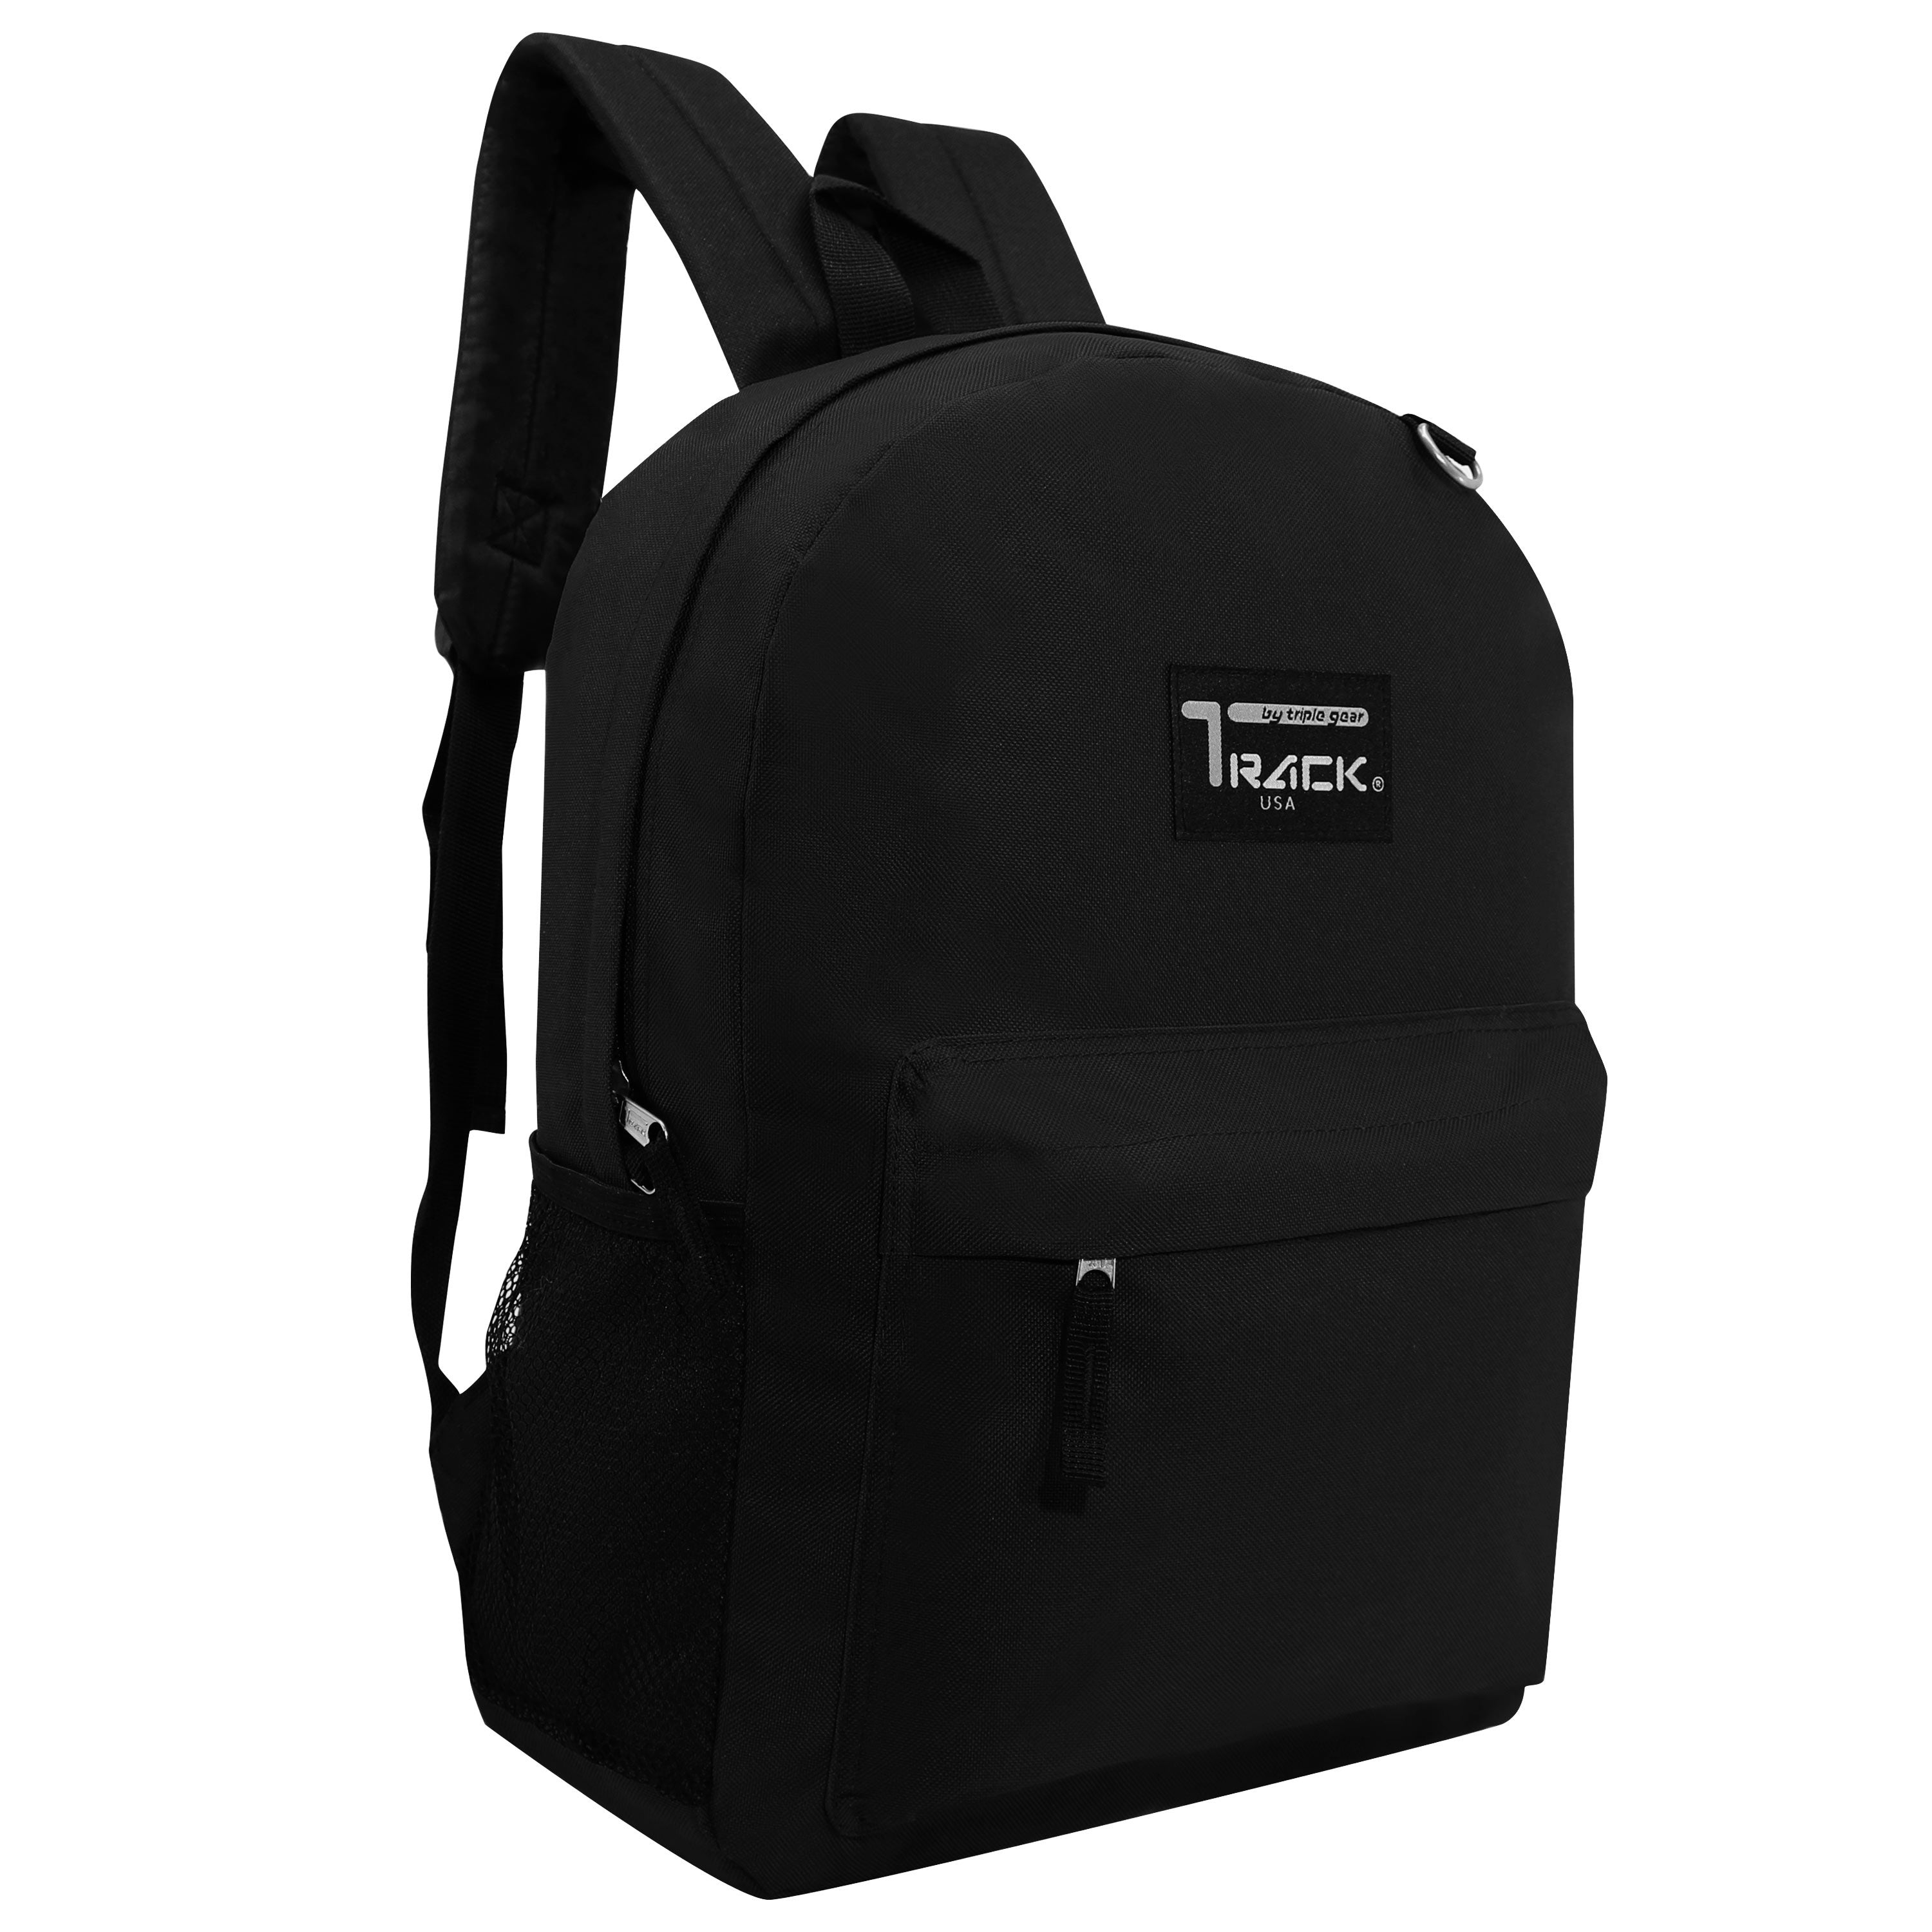 17" Kids Wholesale Backpacks In Black - Wholesale Case of 24 School Bookbags